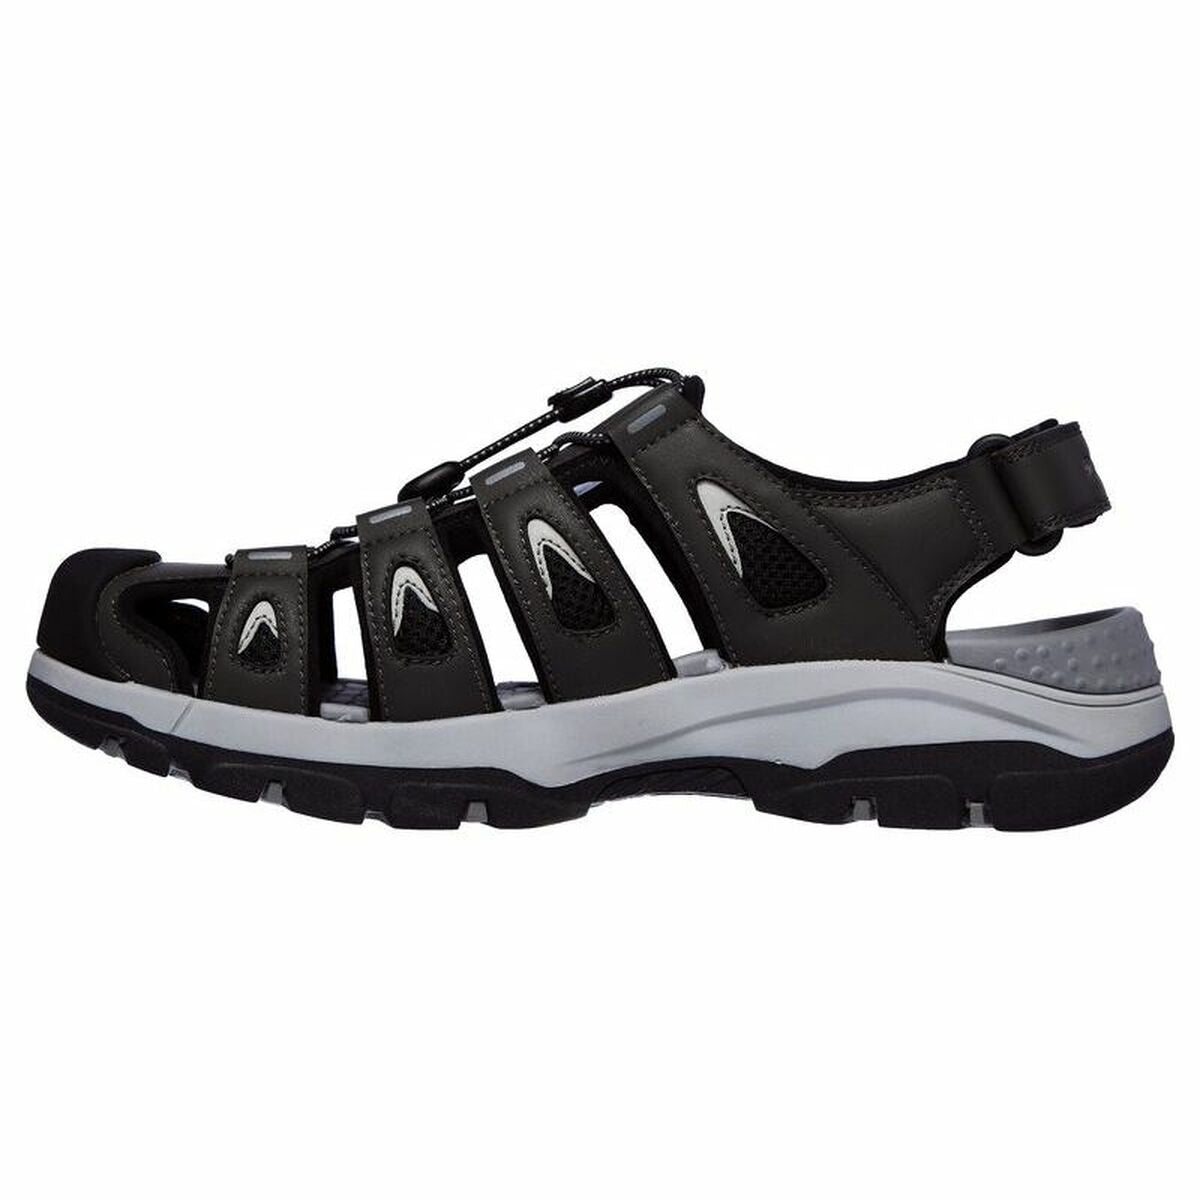 Mountain sandals Skechers Tresmen - Outseen  Black